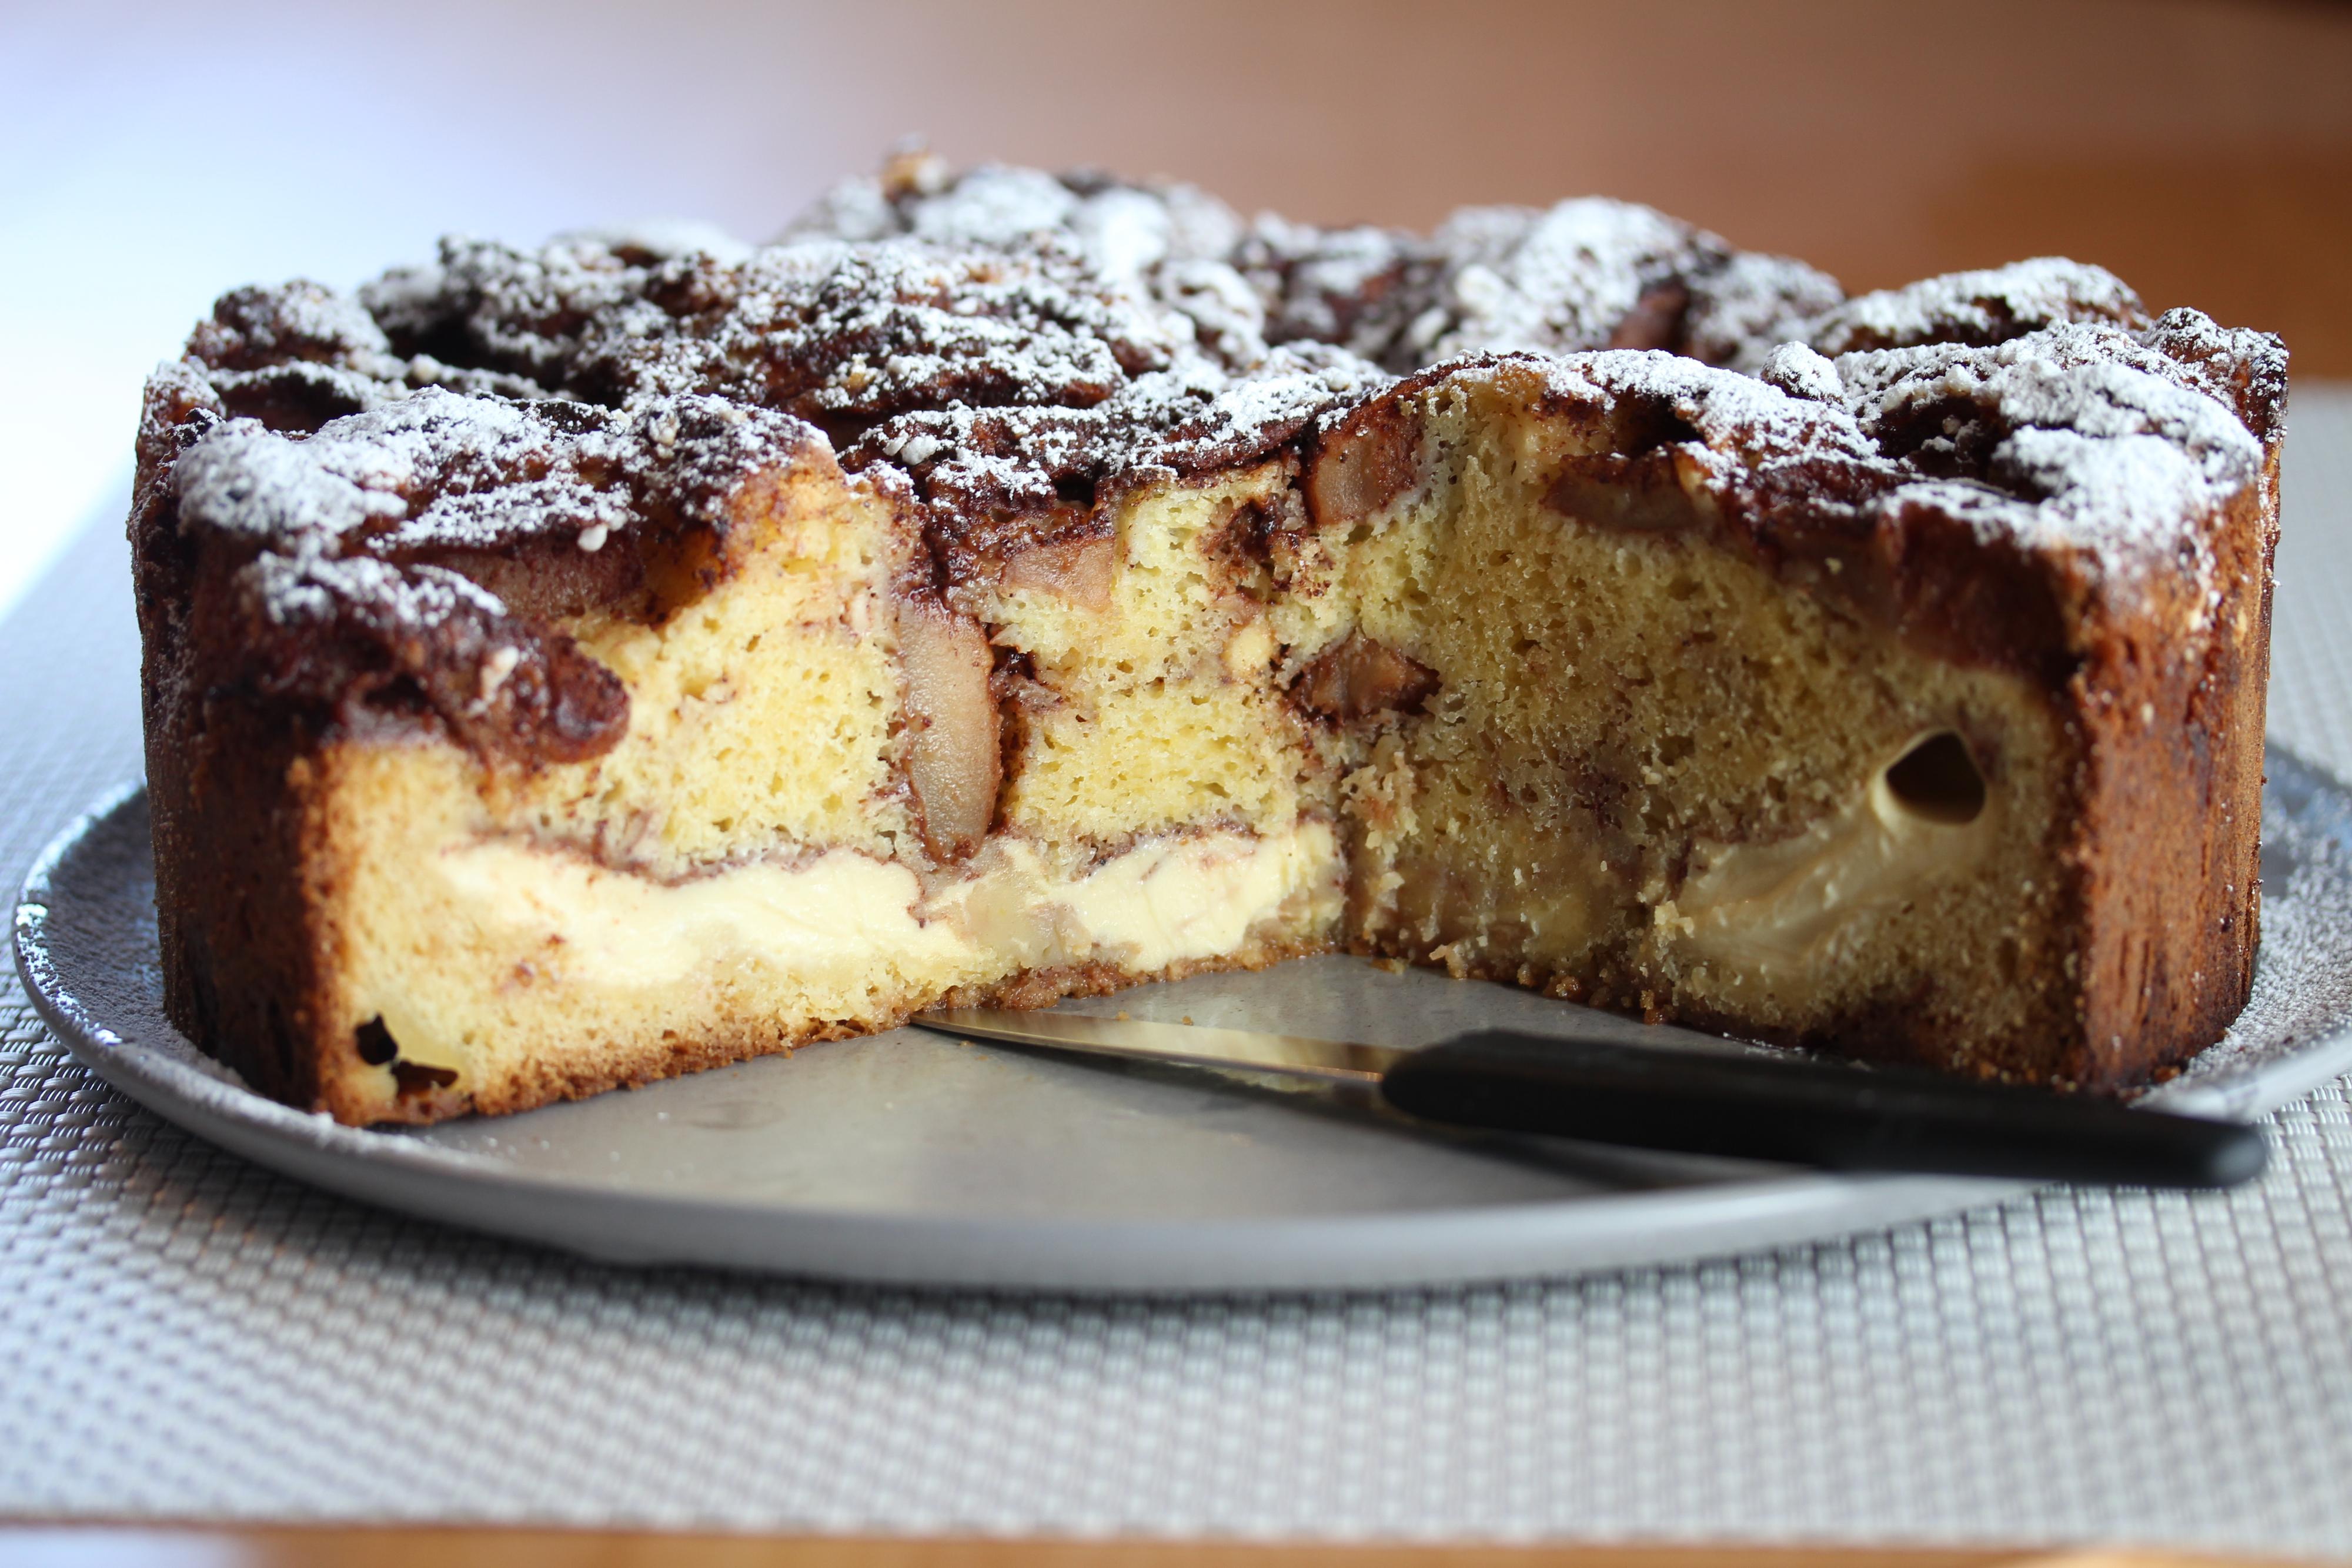 Stek kaken ved 180°C midt i ovnen til kaken er helt gjennomstekt, ca 60 – 70 minutter. Avkjøl kaken i formen før den løftes over på kakefat. Serveres lunken med vaniljeis!